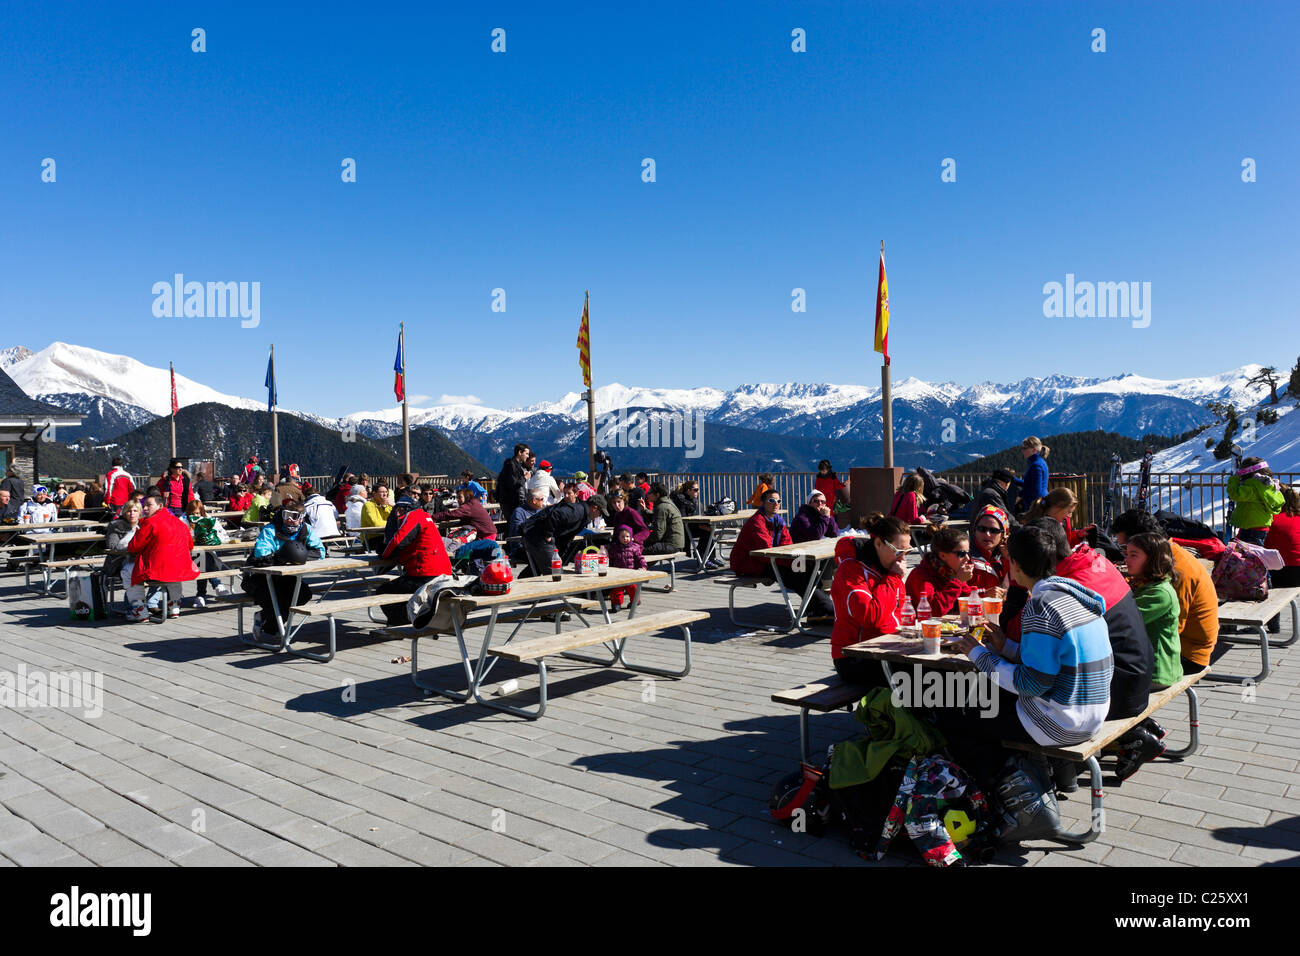 Los esquiadores en la terraza de un restaurante en la montaña Comallempla, Arinsal, la zona de esquí de Vallnord, Andorra Foto de stock